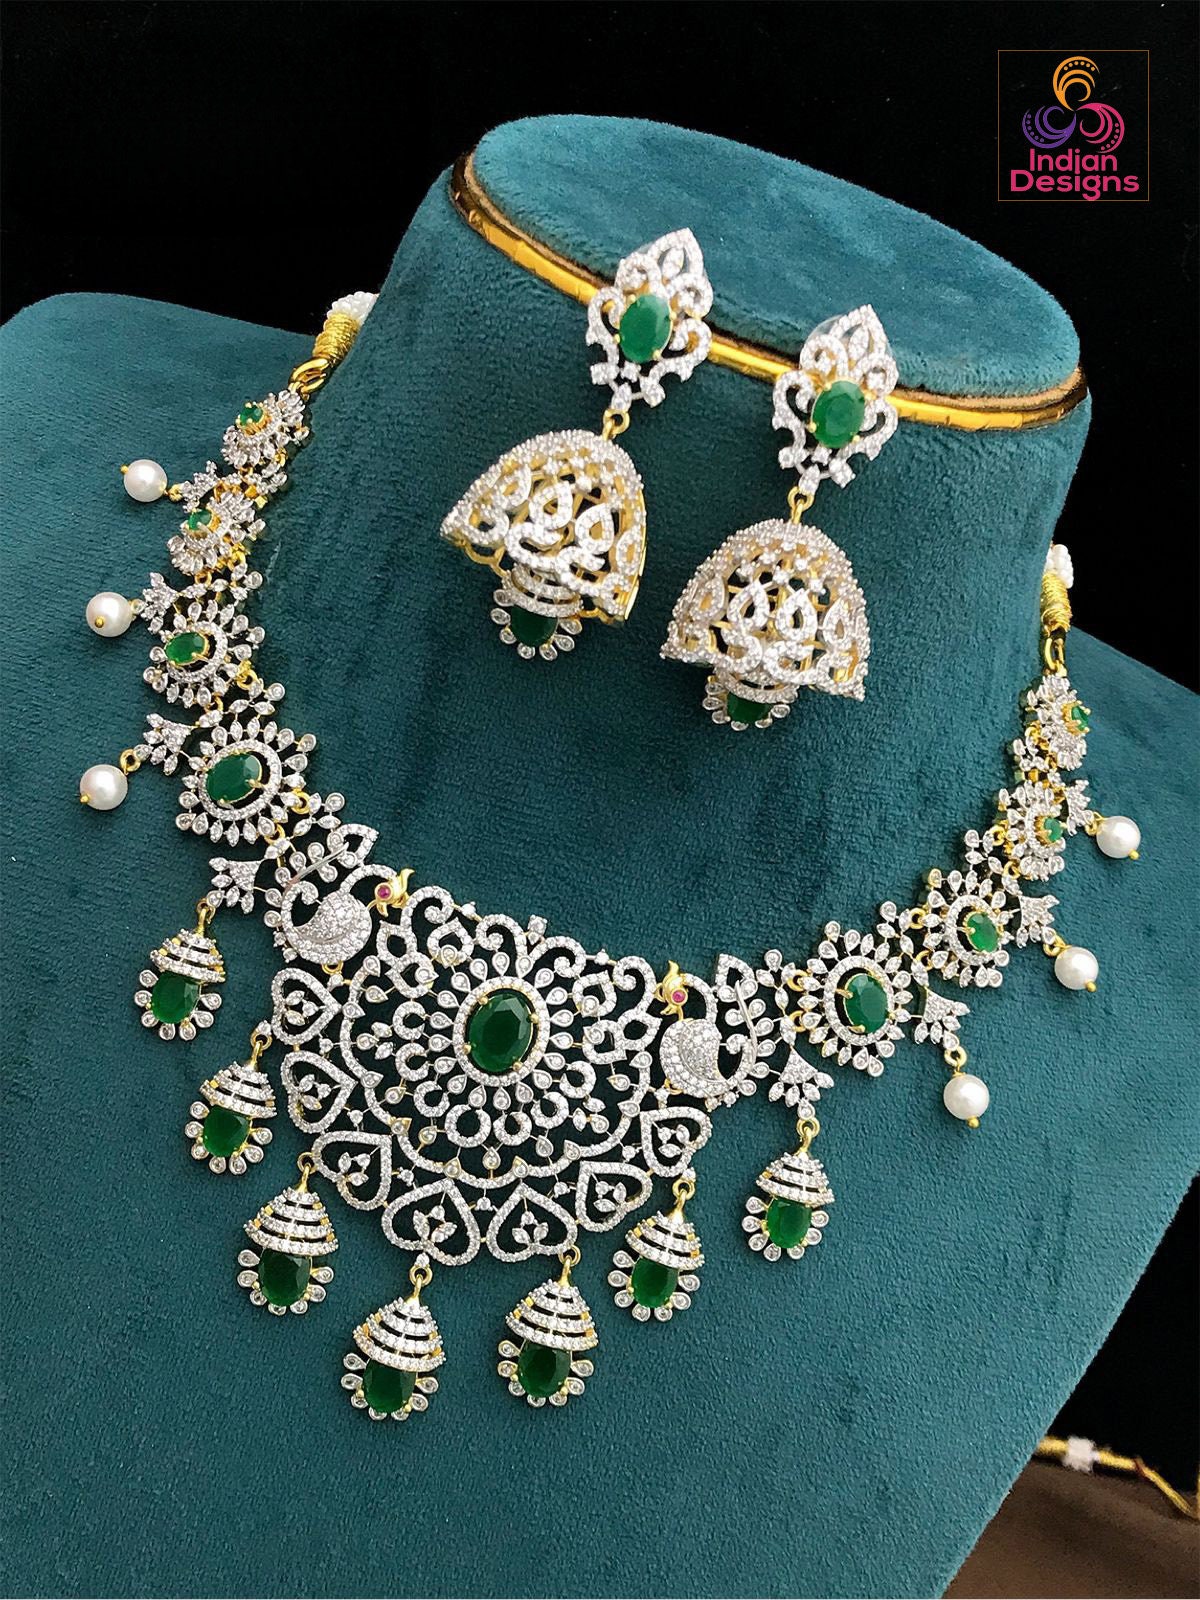 Stunning American Diamond Bridal Choker Jhumka Set with Ruby Stones| Indian Wedding statement Necklace|Ganga Jamuna Emerald stone Choker set